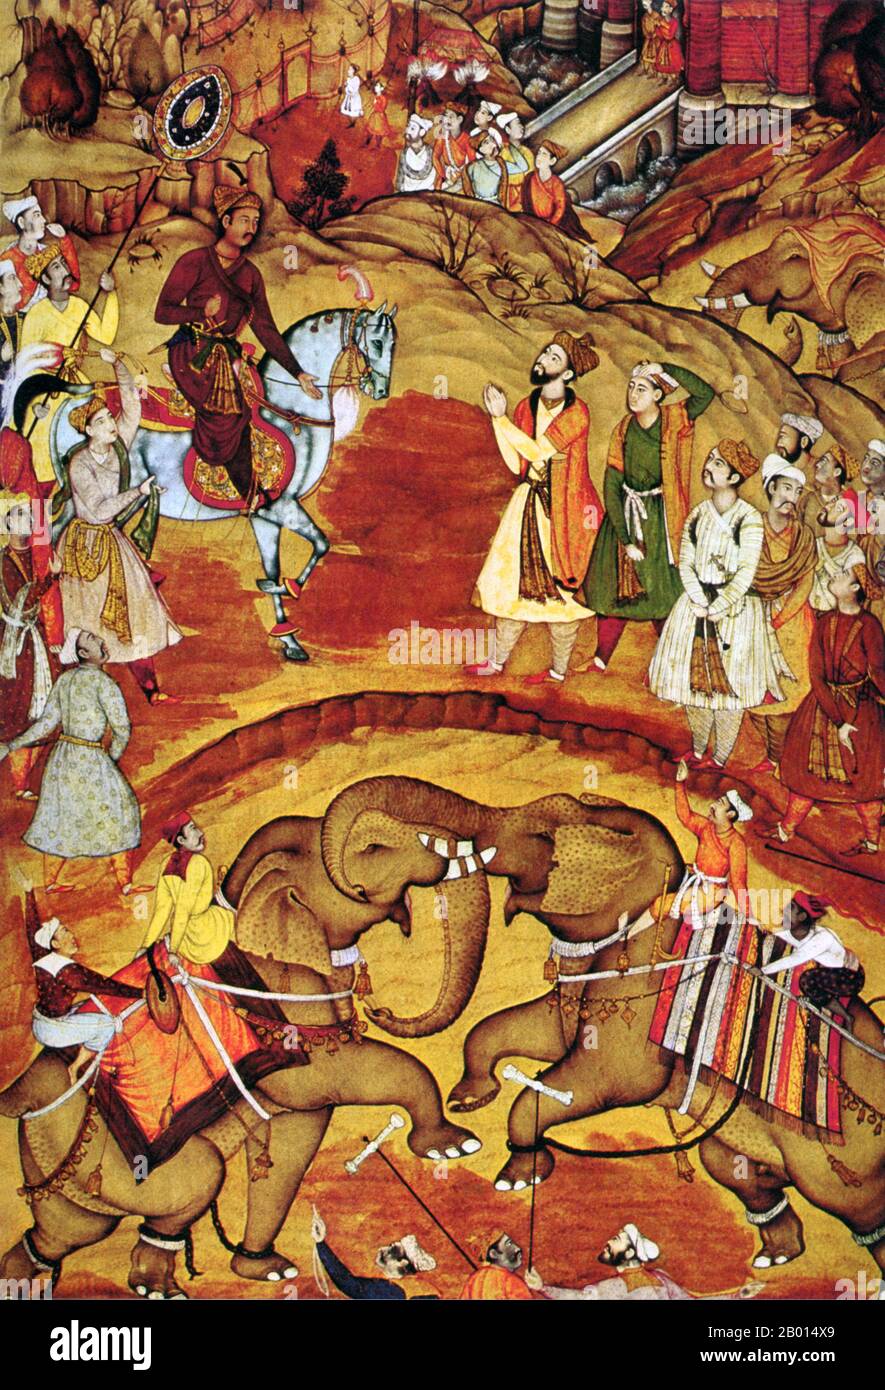 India: L'imperatore Akbar riceve la notizia che il suo secondo figlio è nato mentre si guarda una lotta elefante, 1570. Jaluddin Muhammad Akbar (15 ottobre 1542 – 13 ottobre 1605), conosciuto anche come Shahanshah Akbar-e-Azam o Akbar il Grande, è stato il terzo imperatore Mughal. Era di origine timuride: Il figlio di Humayun, e il nipote di Babur, il sovrano che fondò la dinastia Mughal in India. Alla fine del suo regno, nel 1605, l'impero Mughal coprì la maggior parte dell'India settentrionale e centrale ed era uno degli imperi più potenti della sua epoca. Foto Stock